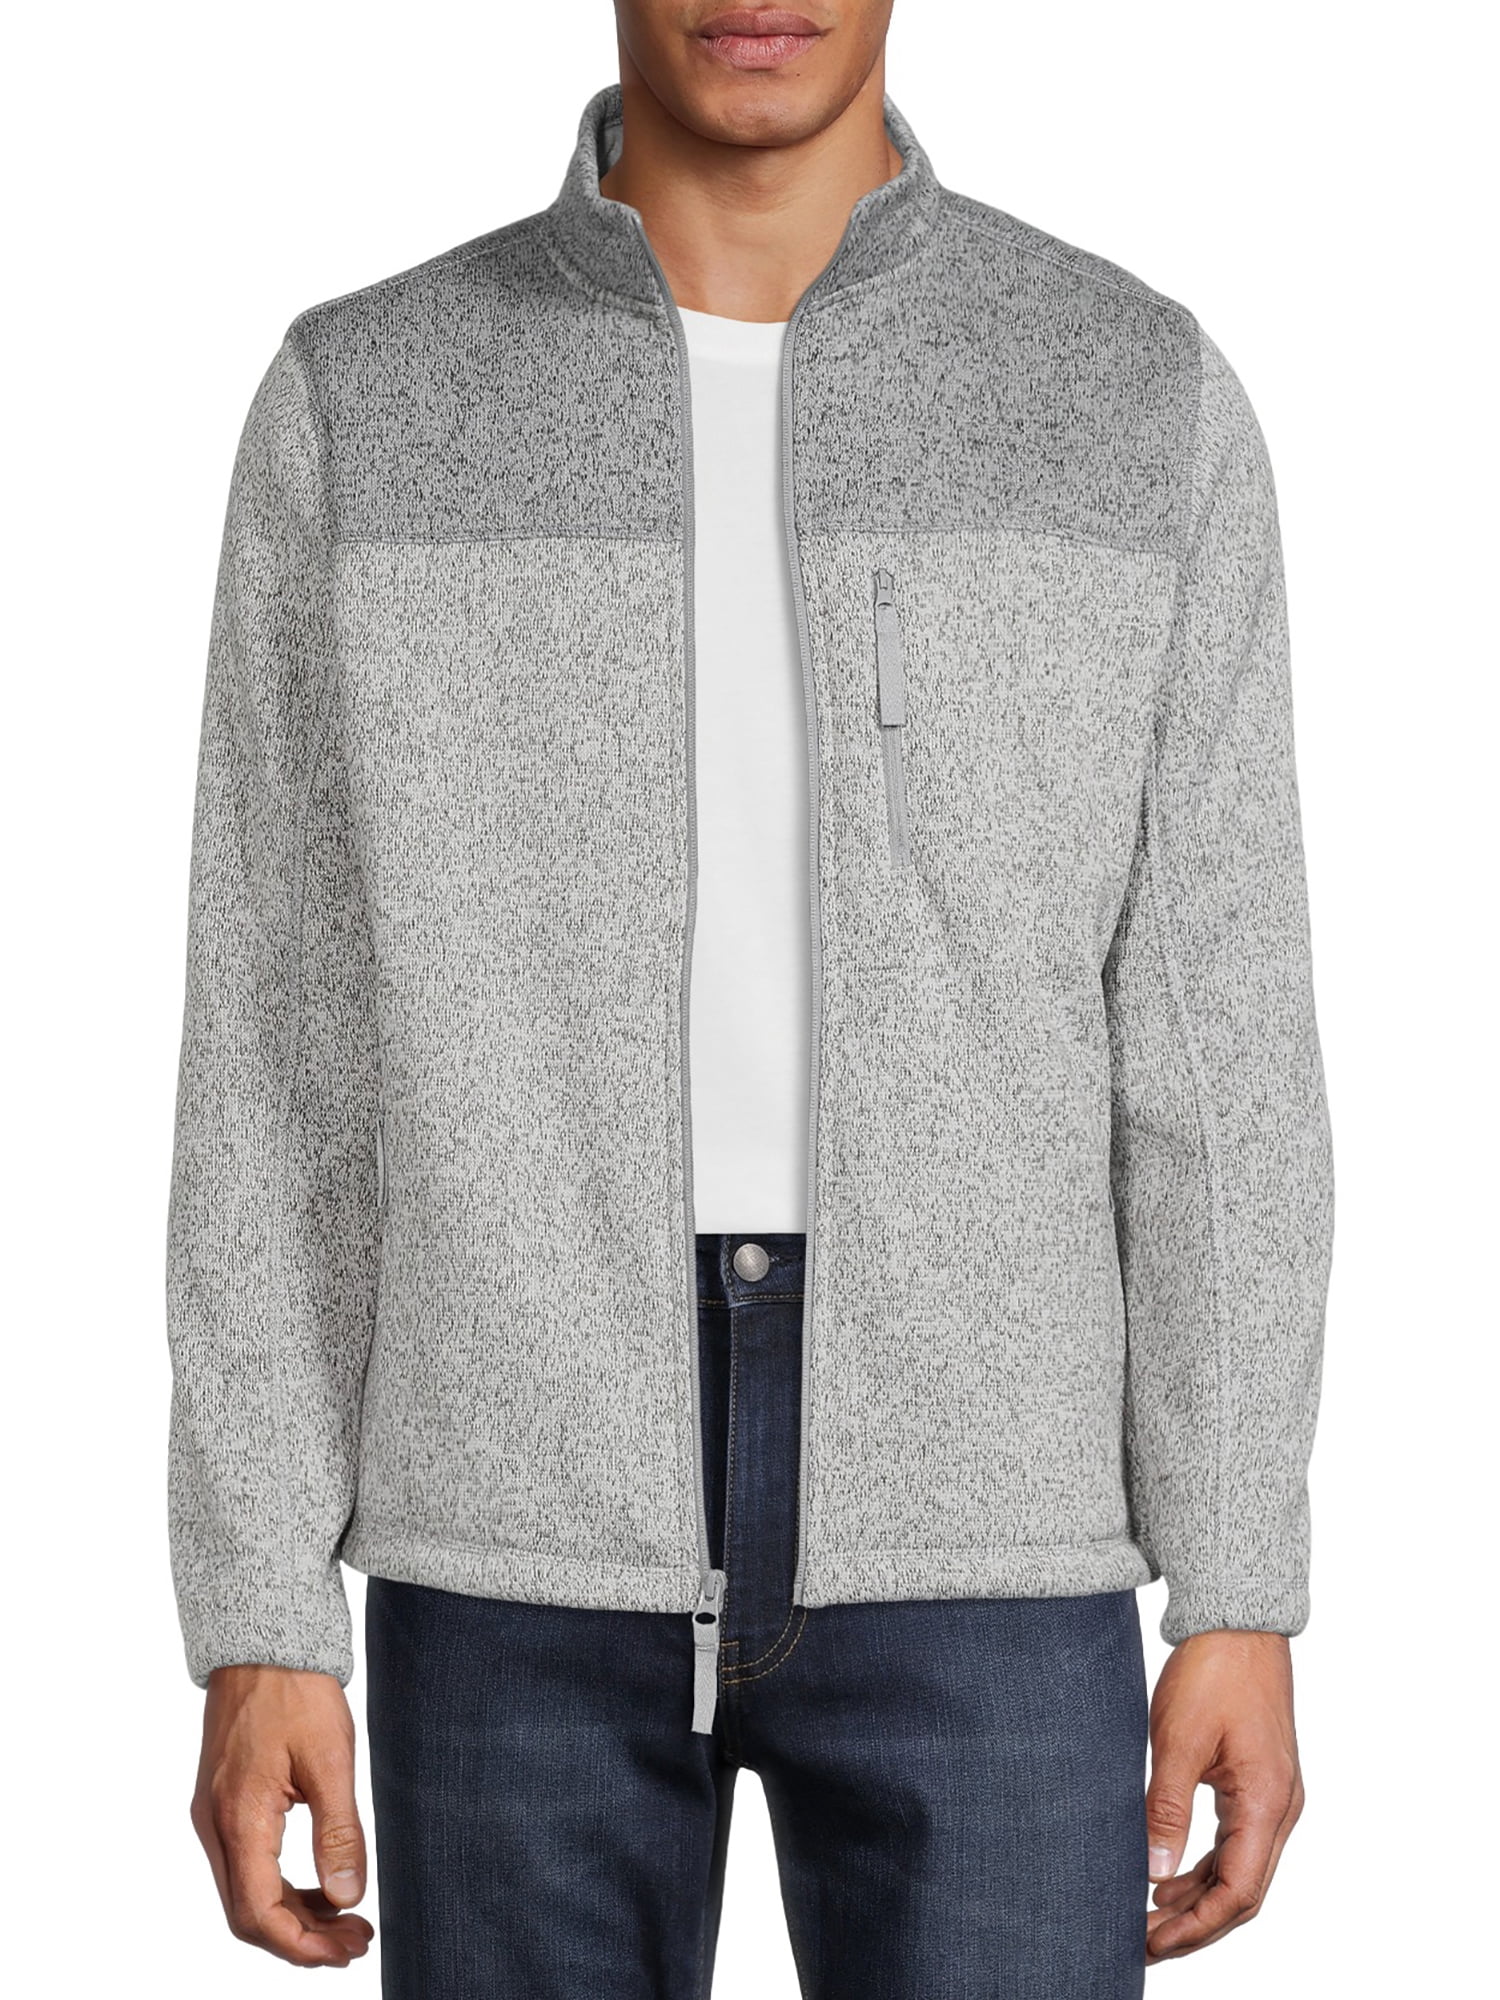 George Men's and Big Men's Zip-Up Fleece Sweater, up to Size 5XL ...